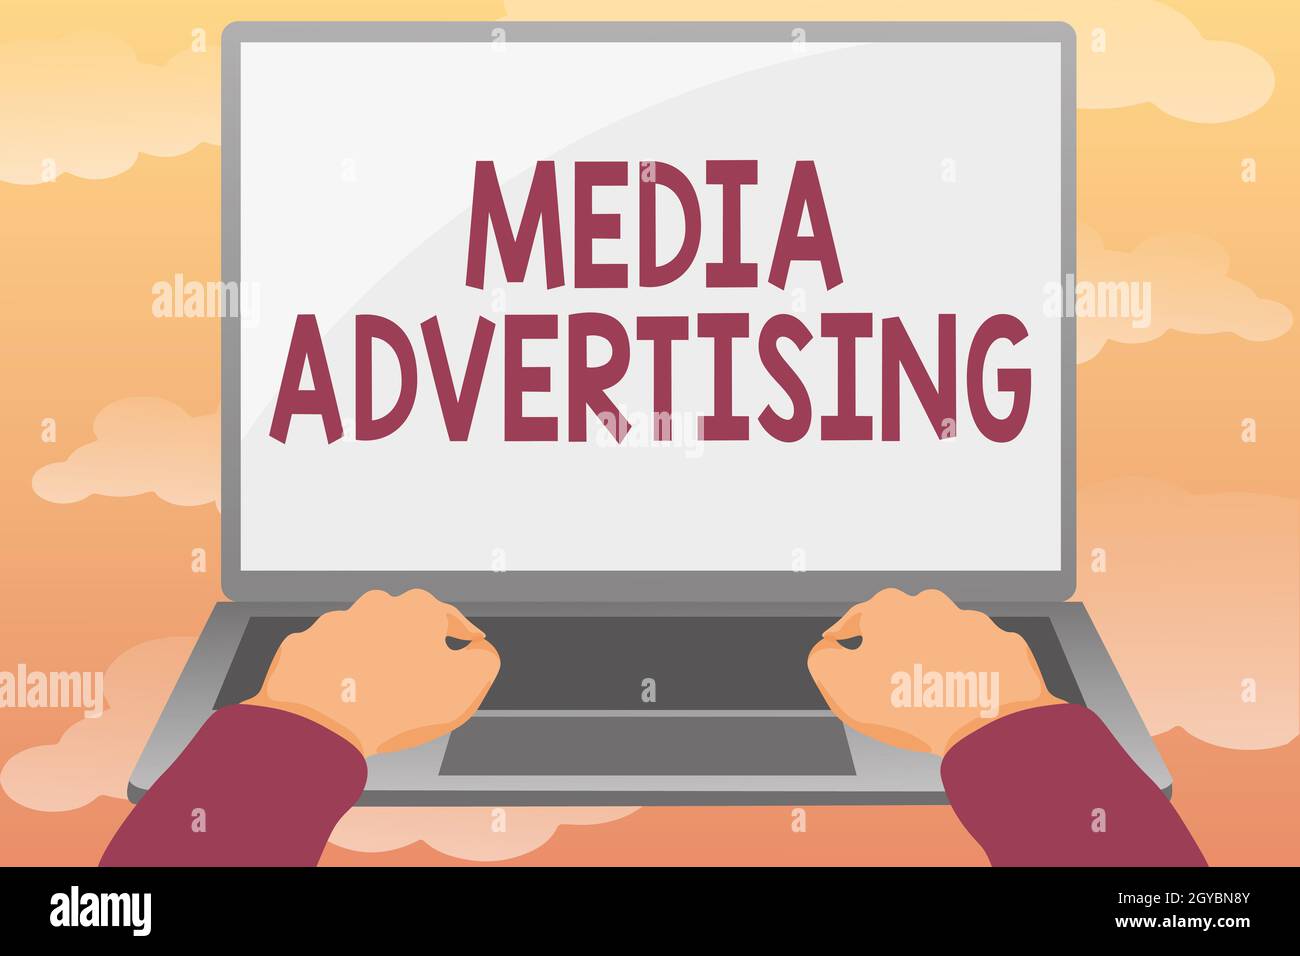 Didascalia concettuale Media Advertising, Business Approach scelta dei media efficaci per una campagna pubblicitaria editing e formattazione di articoli online Foto Stock